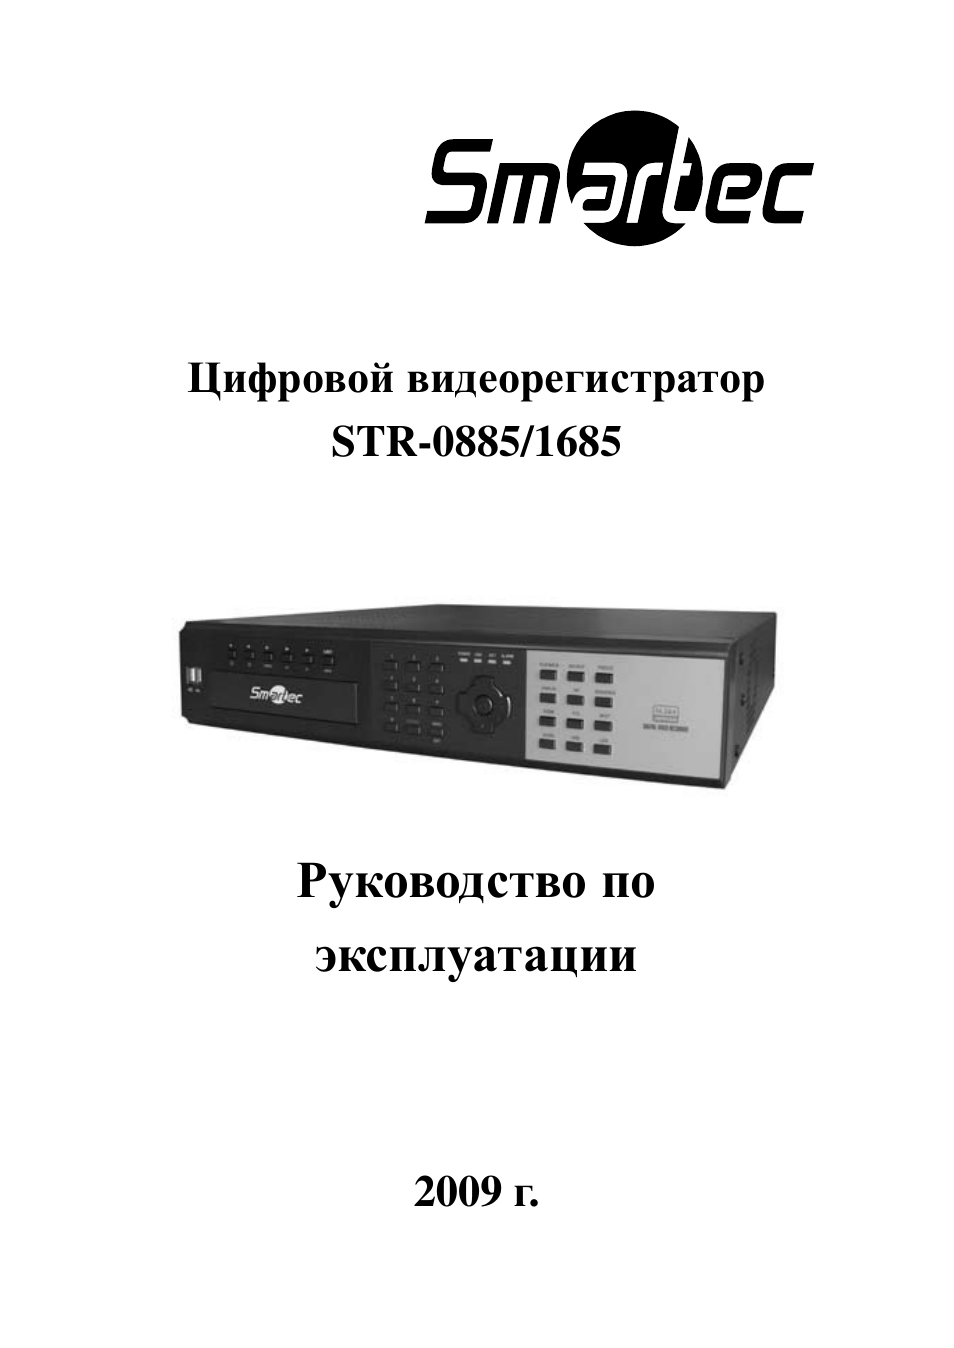 Fx 16lt видеорегистратор инструкция